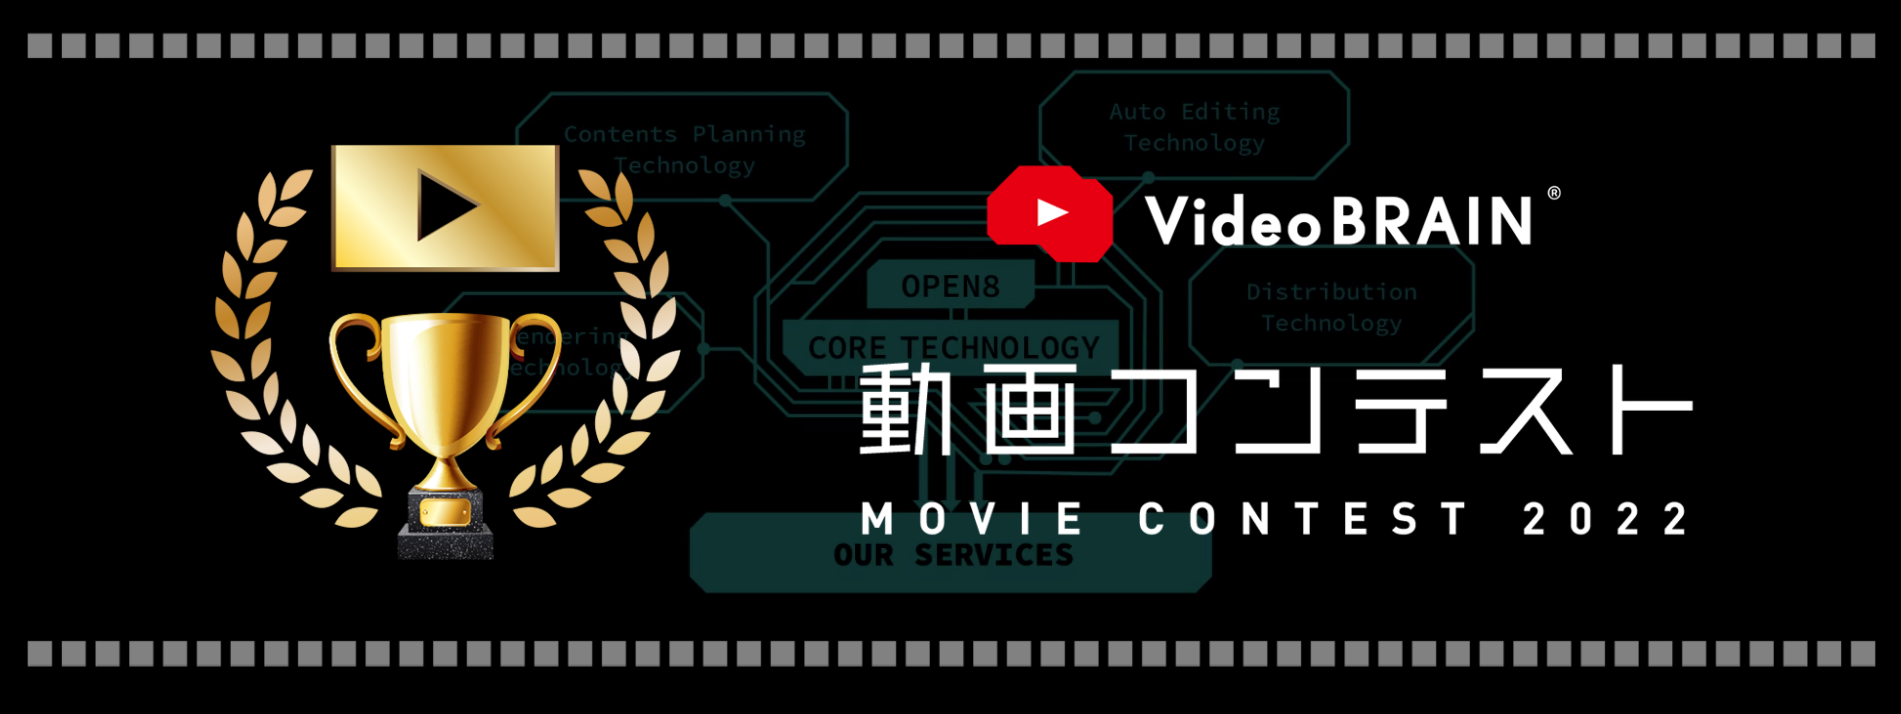 Video-BRAIN-動画コンテスト2022-動画制作・編集ツール-Video-BRAIN（ビデオブレイン）.png